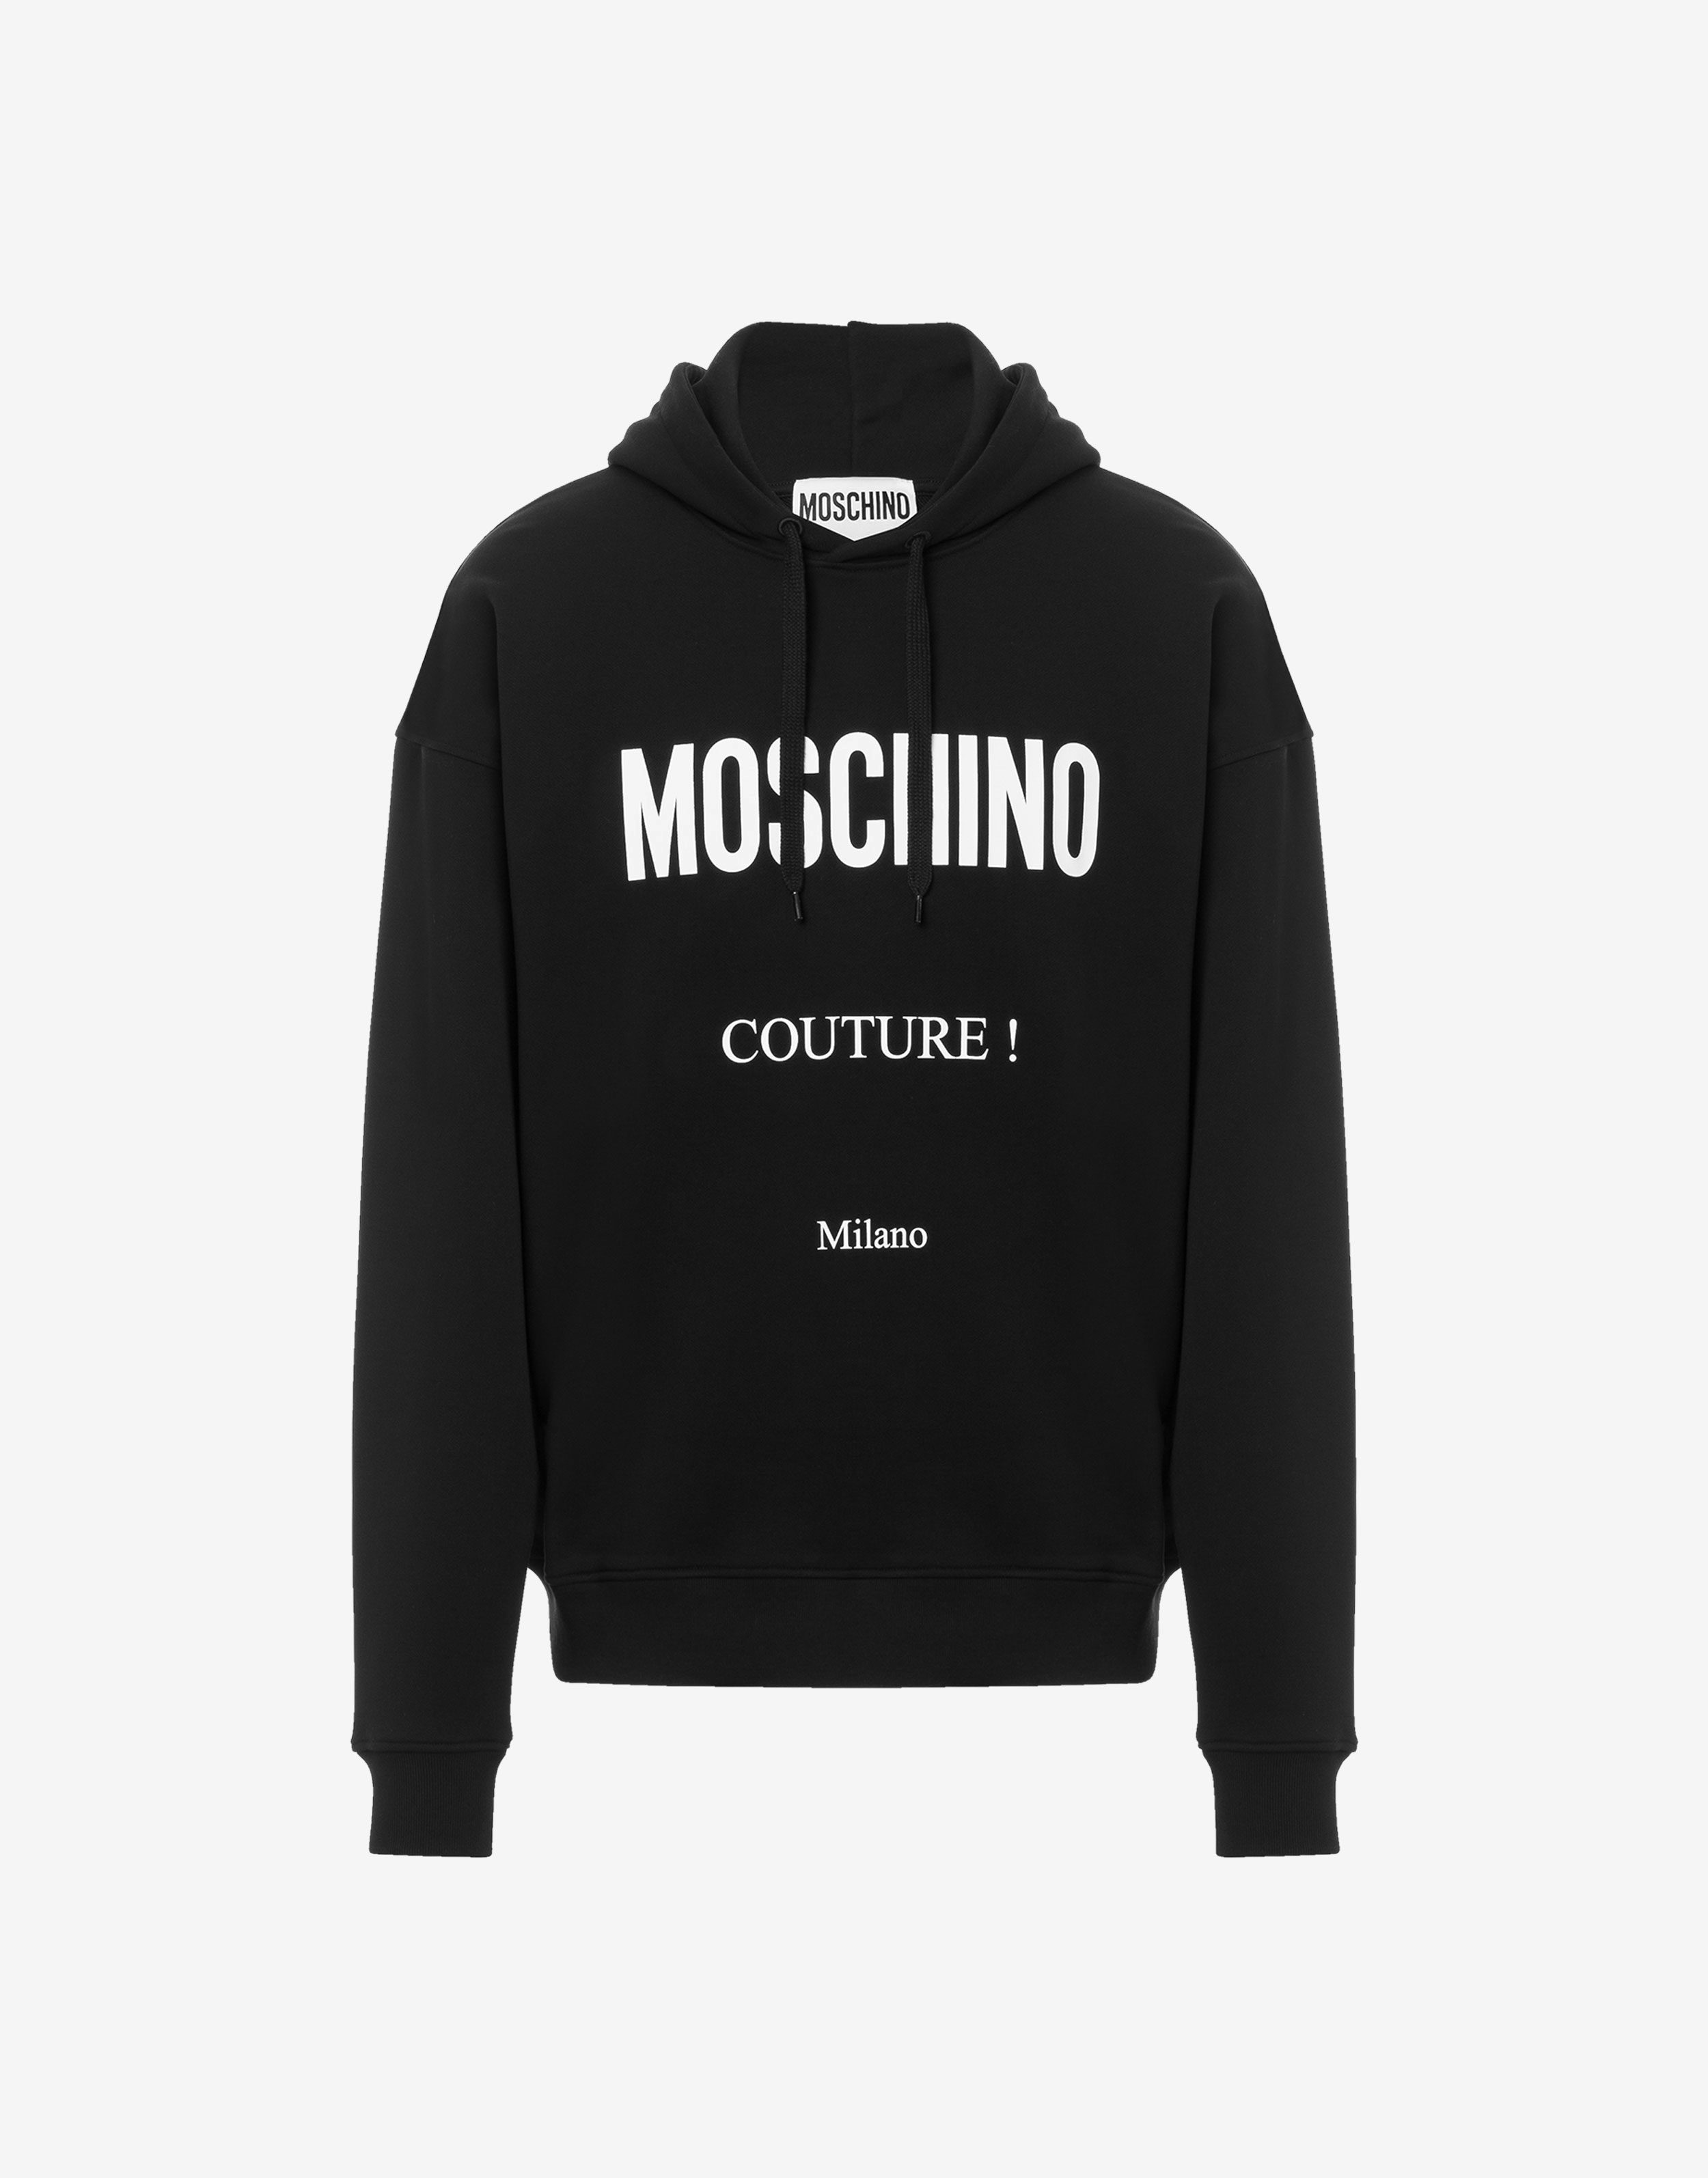 Moschino Couture cotton sweatshirt